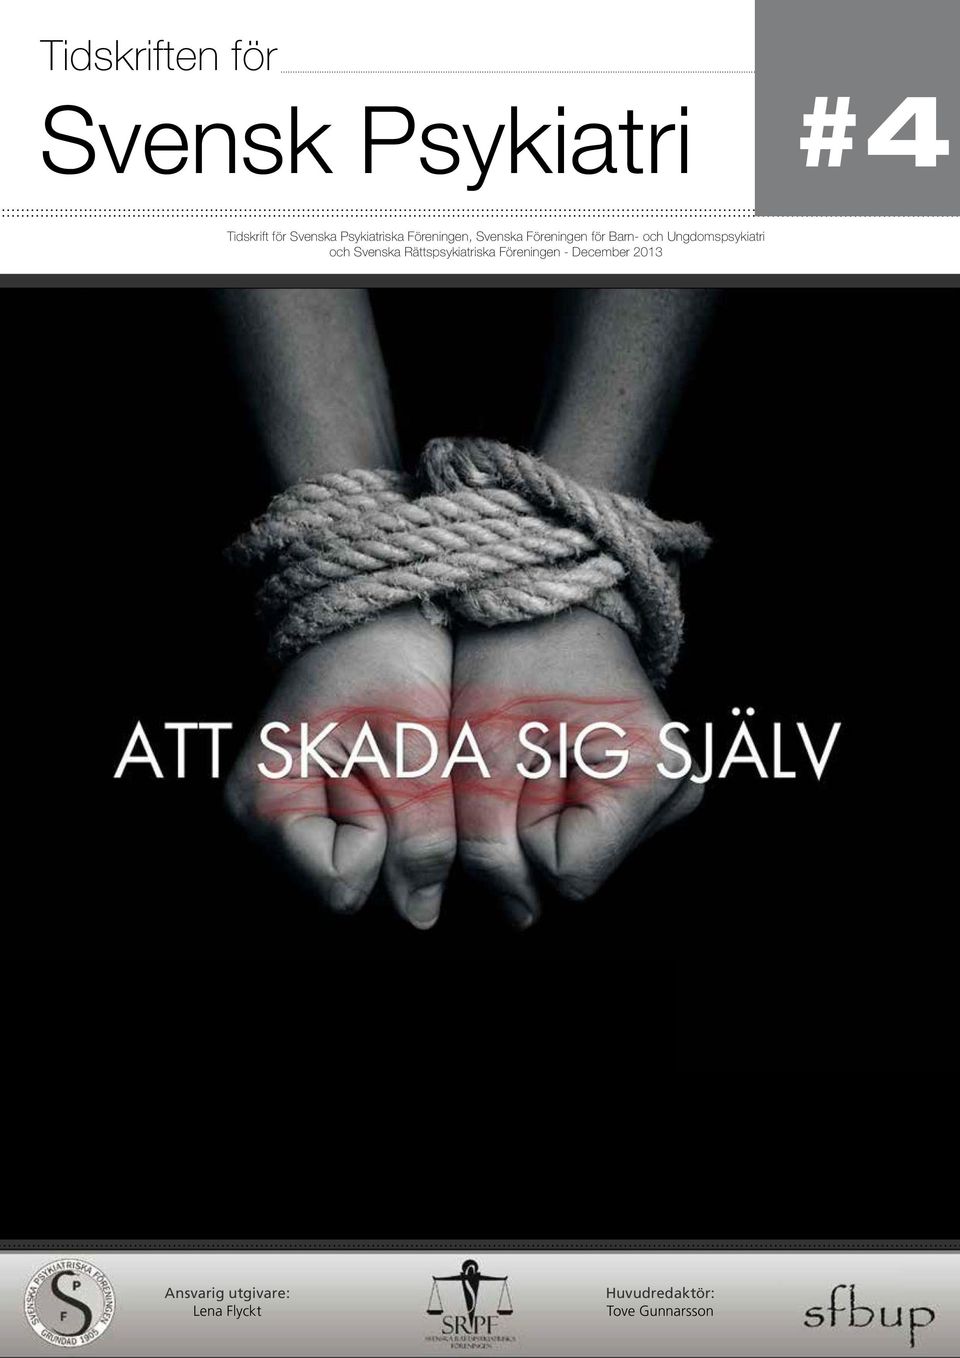 Ungdomspsykiatri och Svenska Rättspsykiatriska Föreningen -